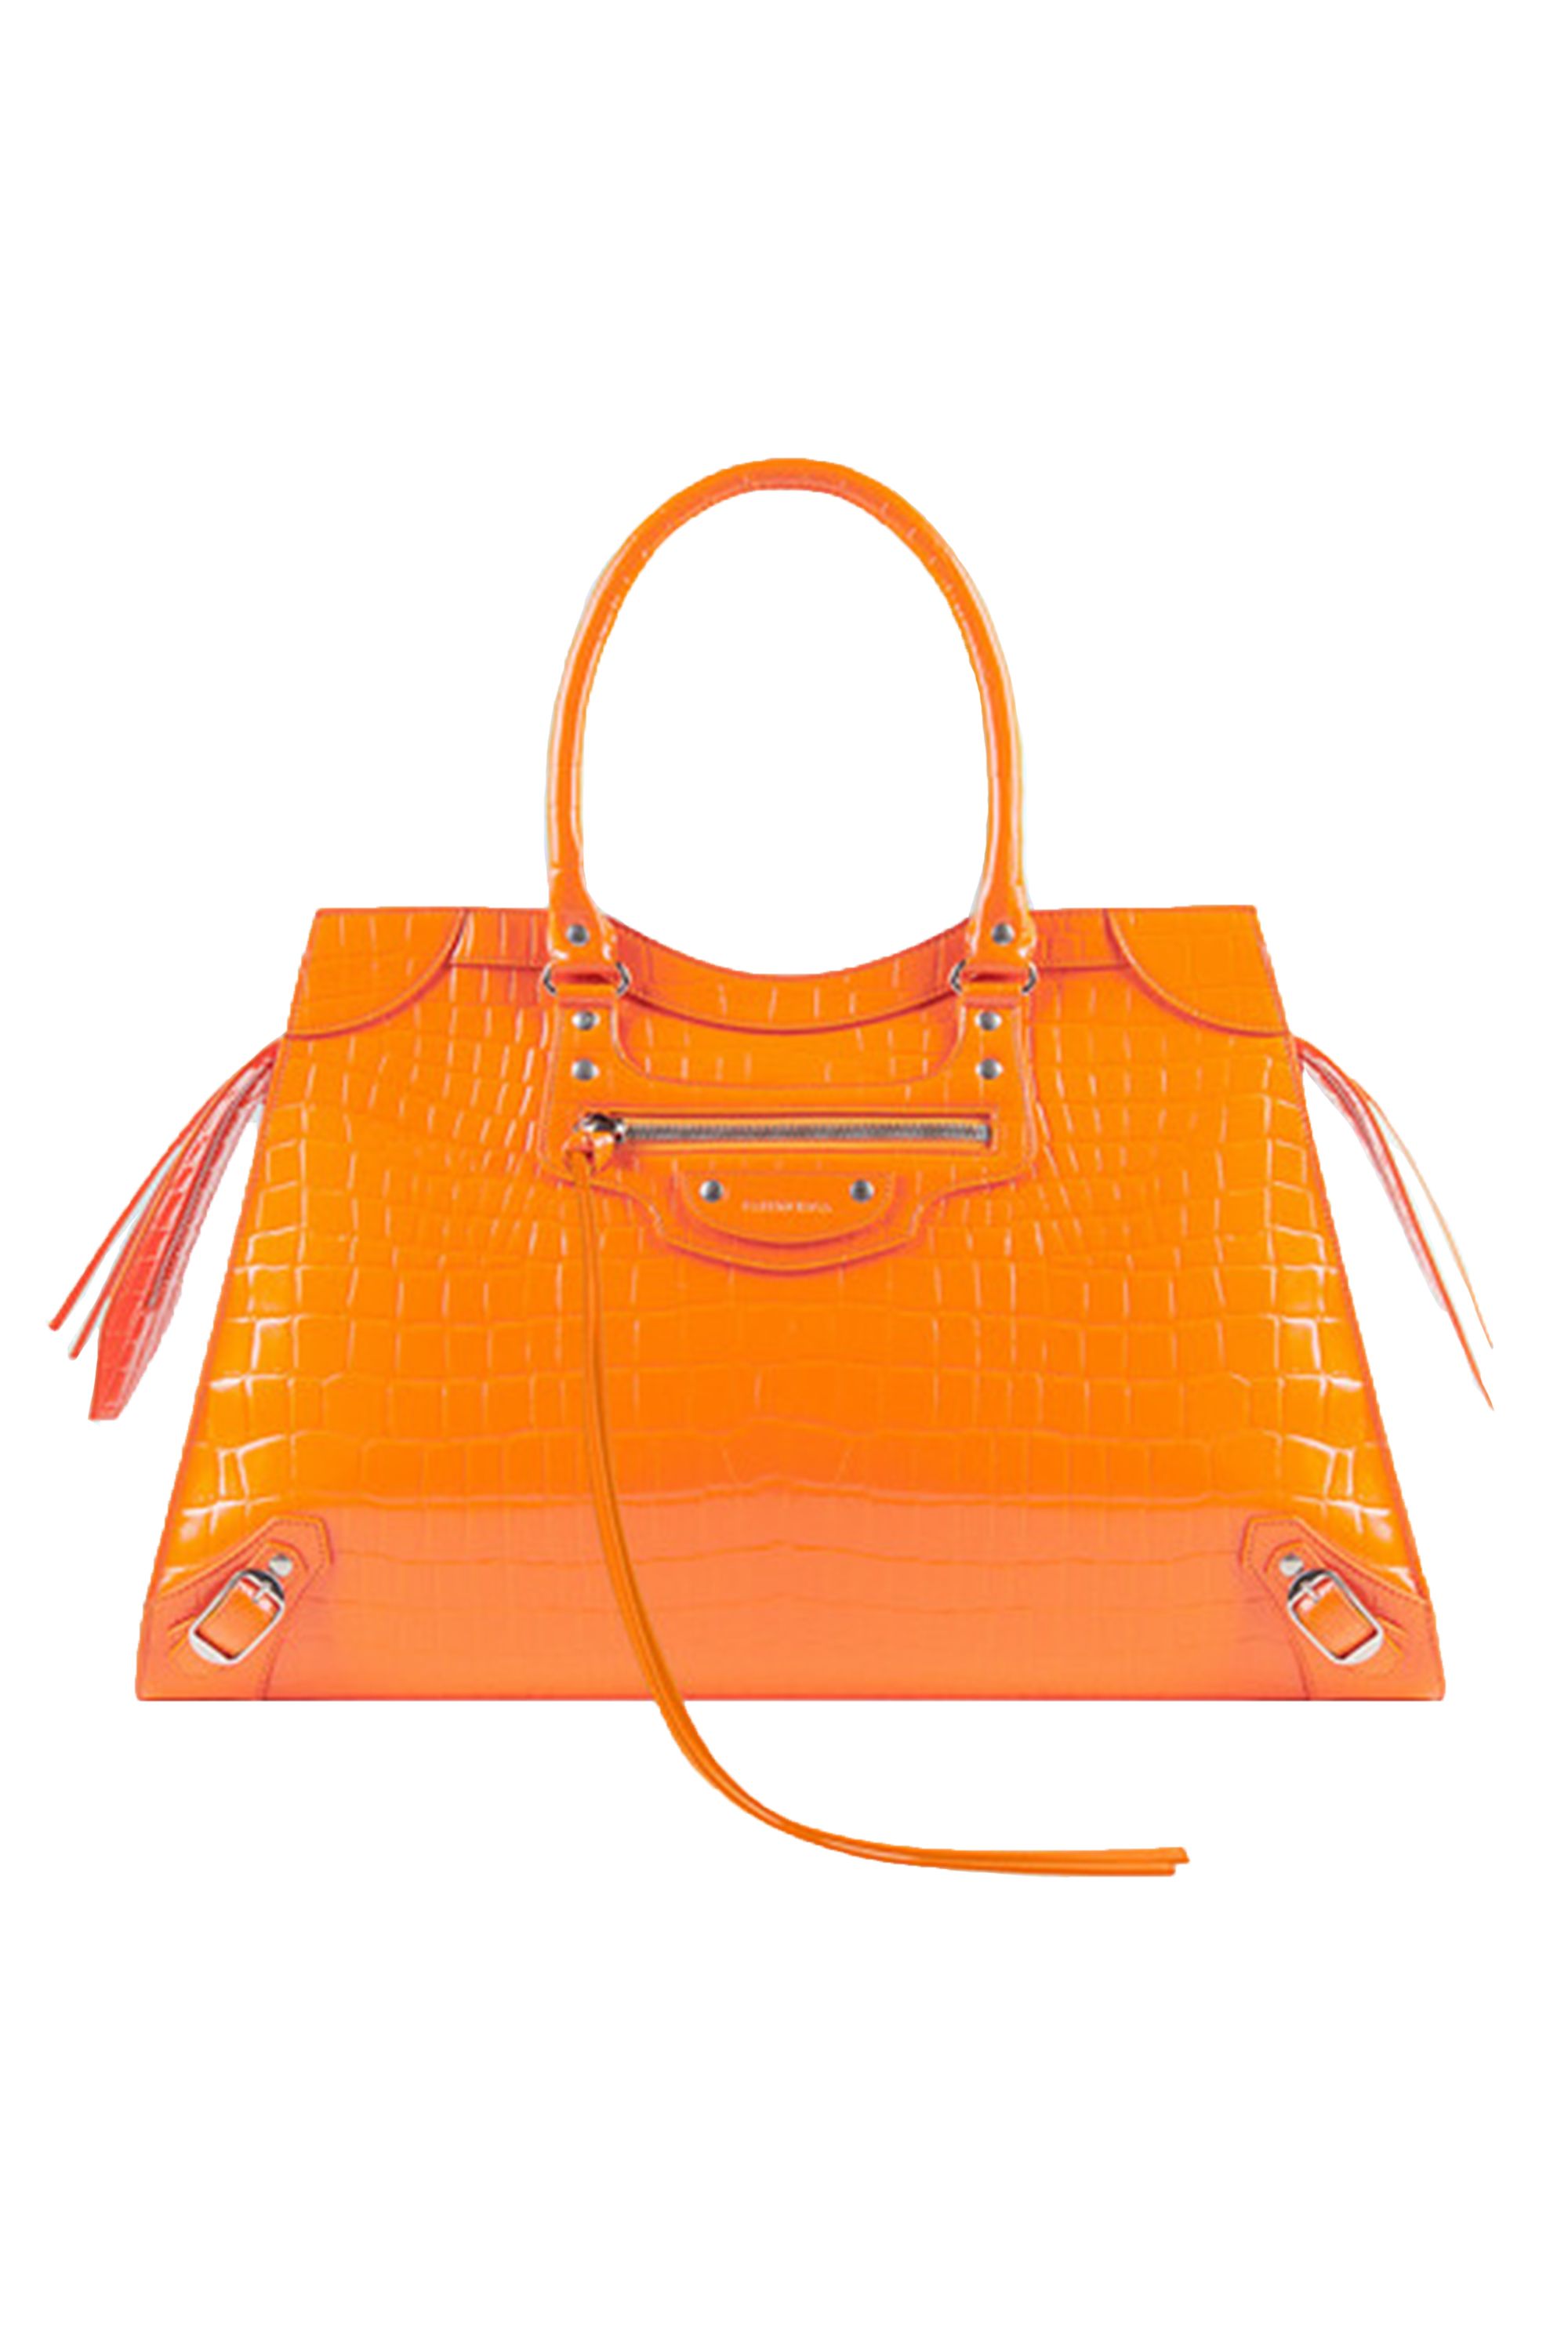 top designer purses